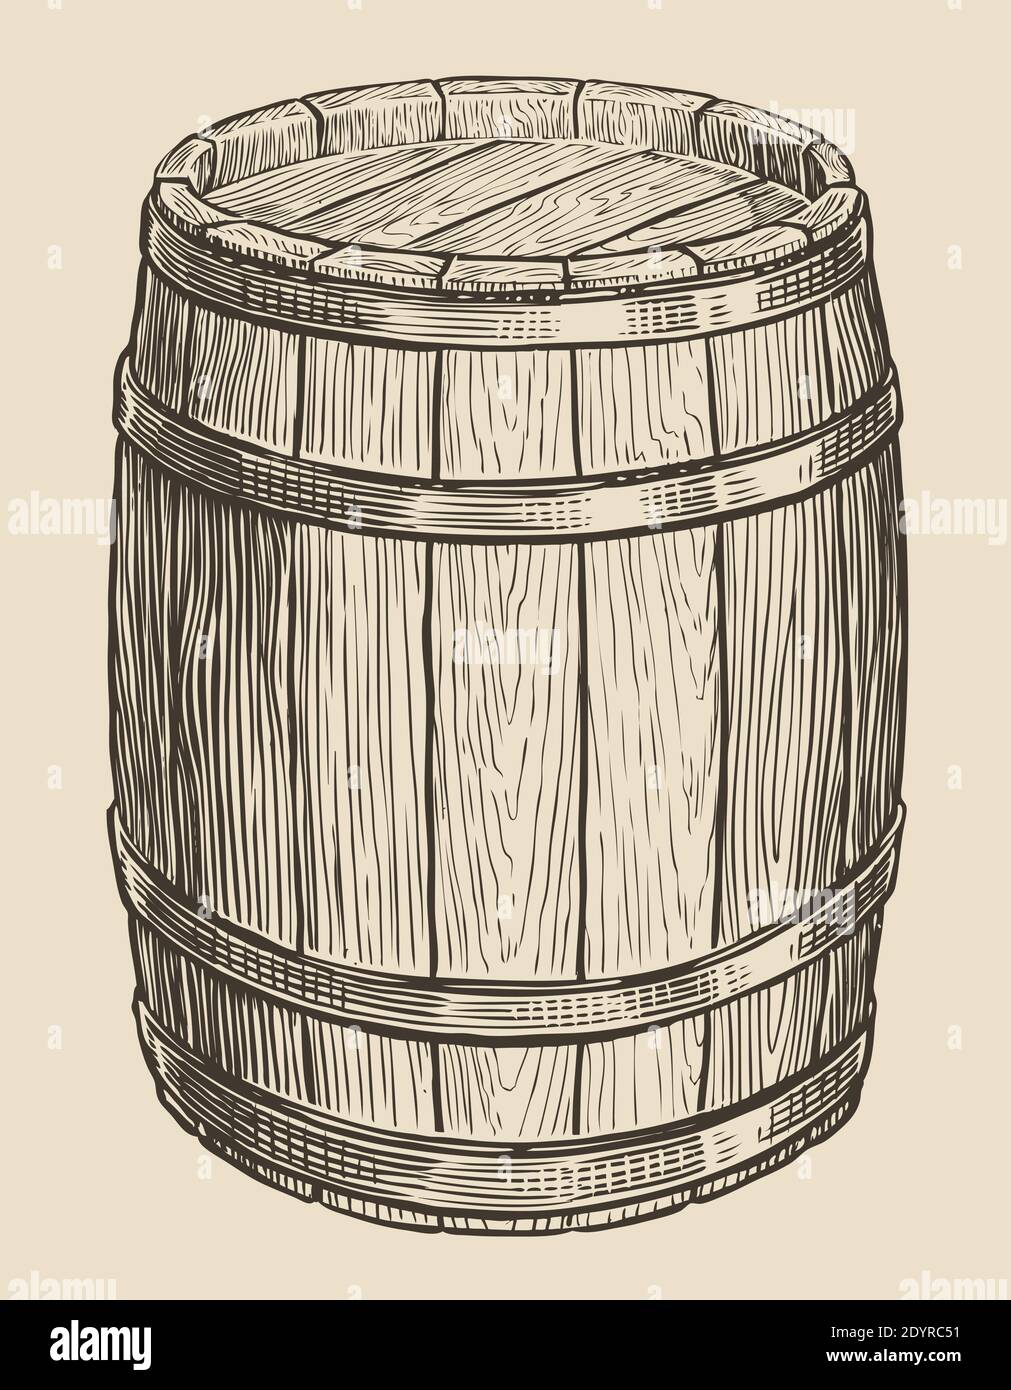 Ein Holzfass für Wein und anderen Alkohol. Skizze Vintage Vektor Illustration Stock Vektor